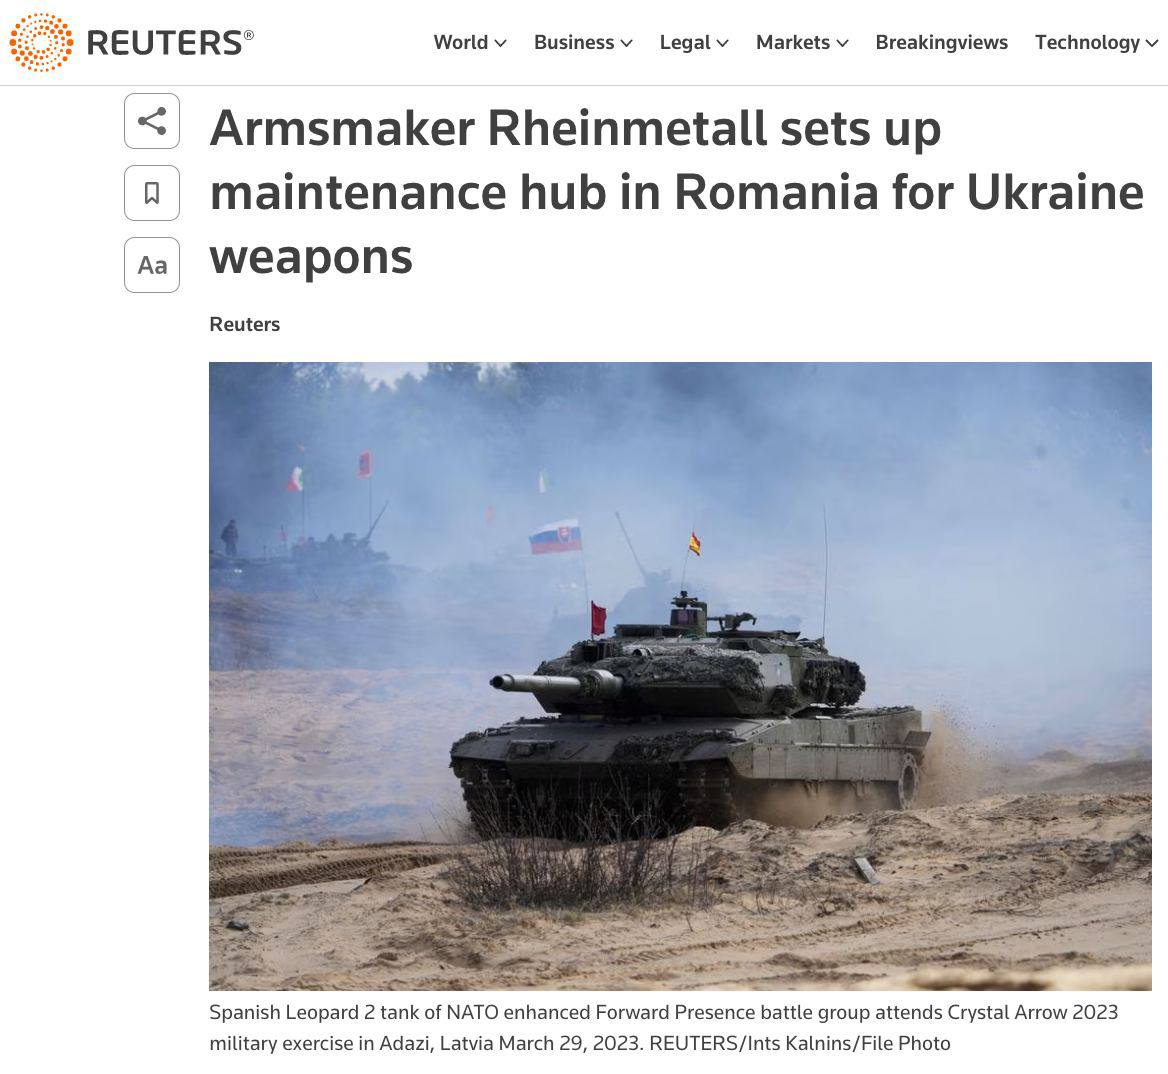 Rheinmetall откроет в Румынии хаб для техобслуживания поставляемых Украине вооружений